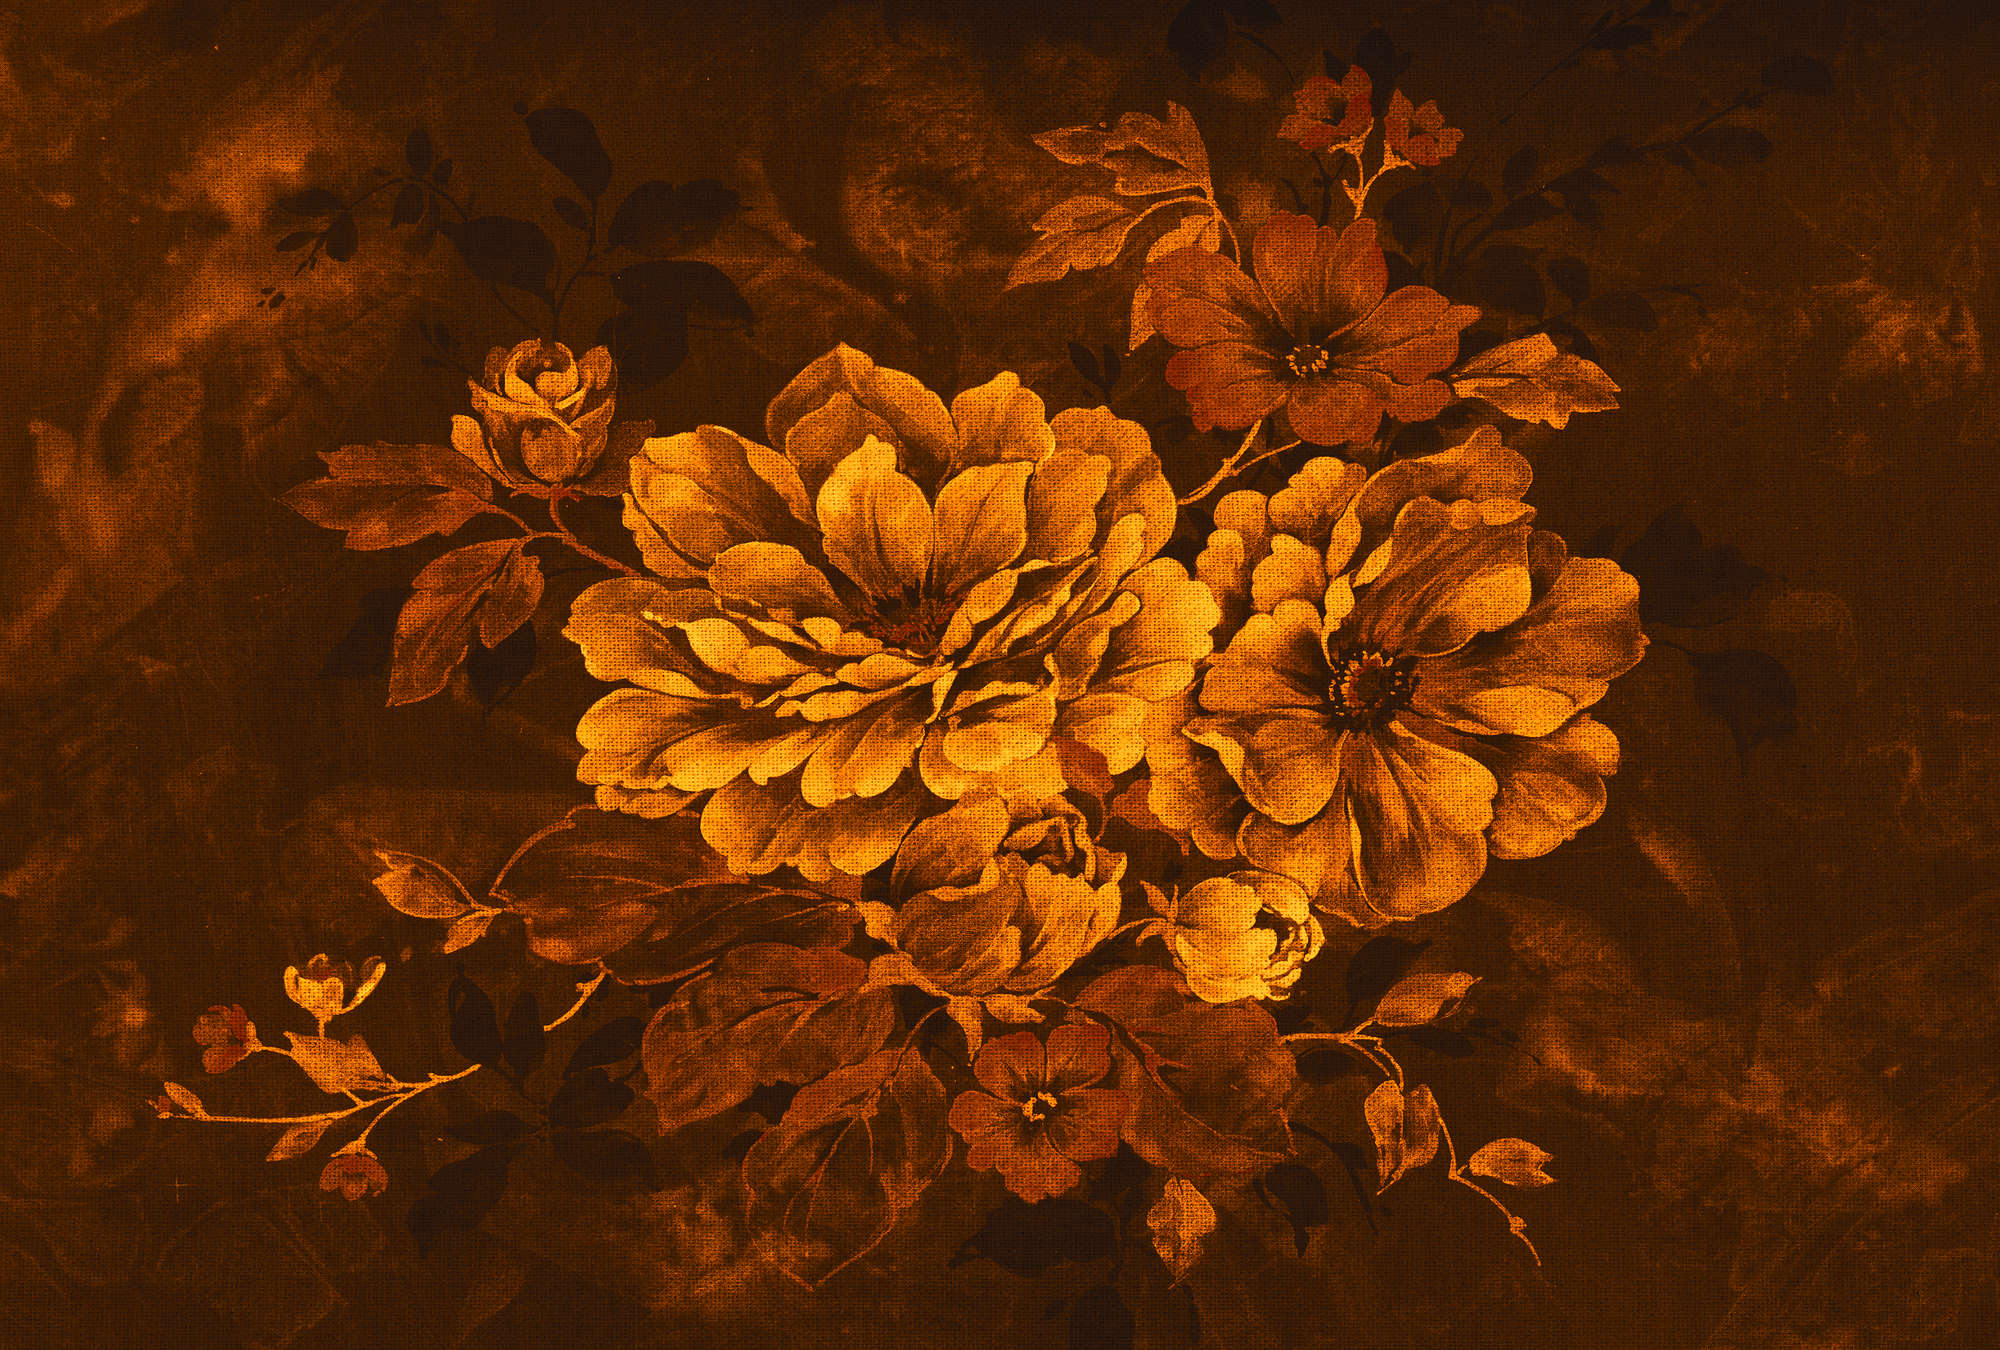             Carta da parati con fiori in stile pittura a olio, design vintage - Arancione, nero, giallo
        